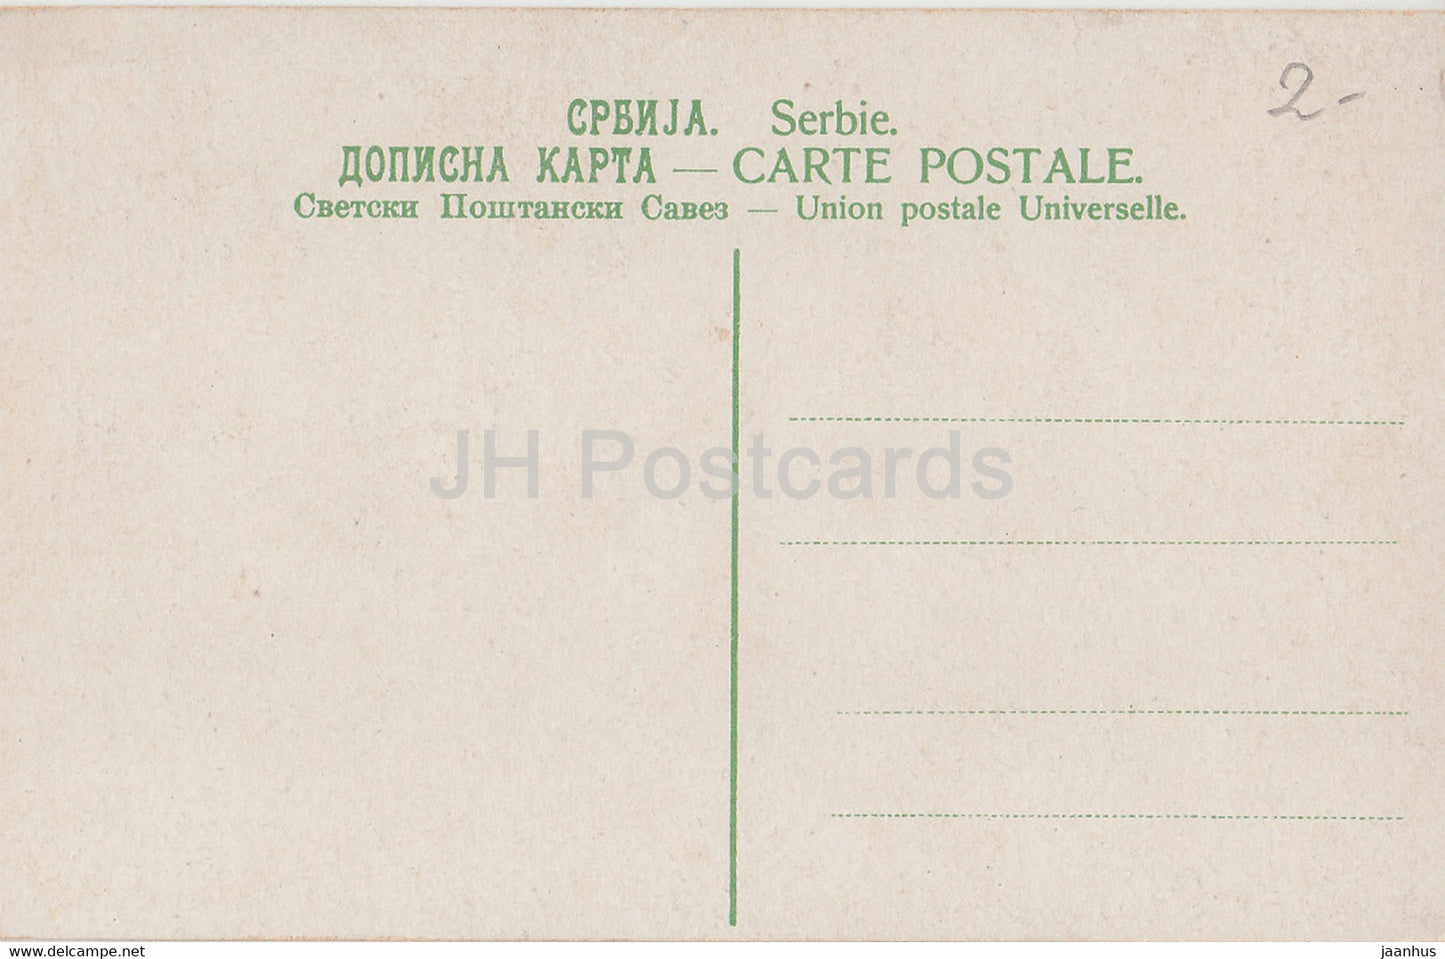 Tracht National Serbe - Volkstrachten - alte Postkarte - Serbien - unbenutzt